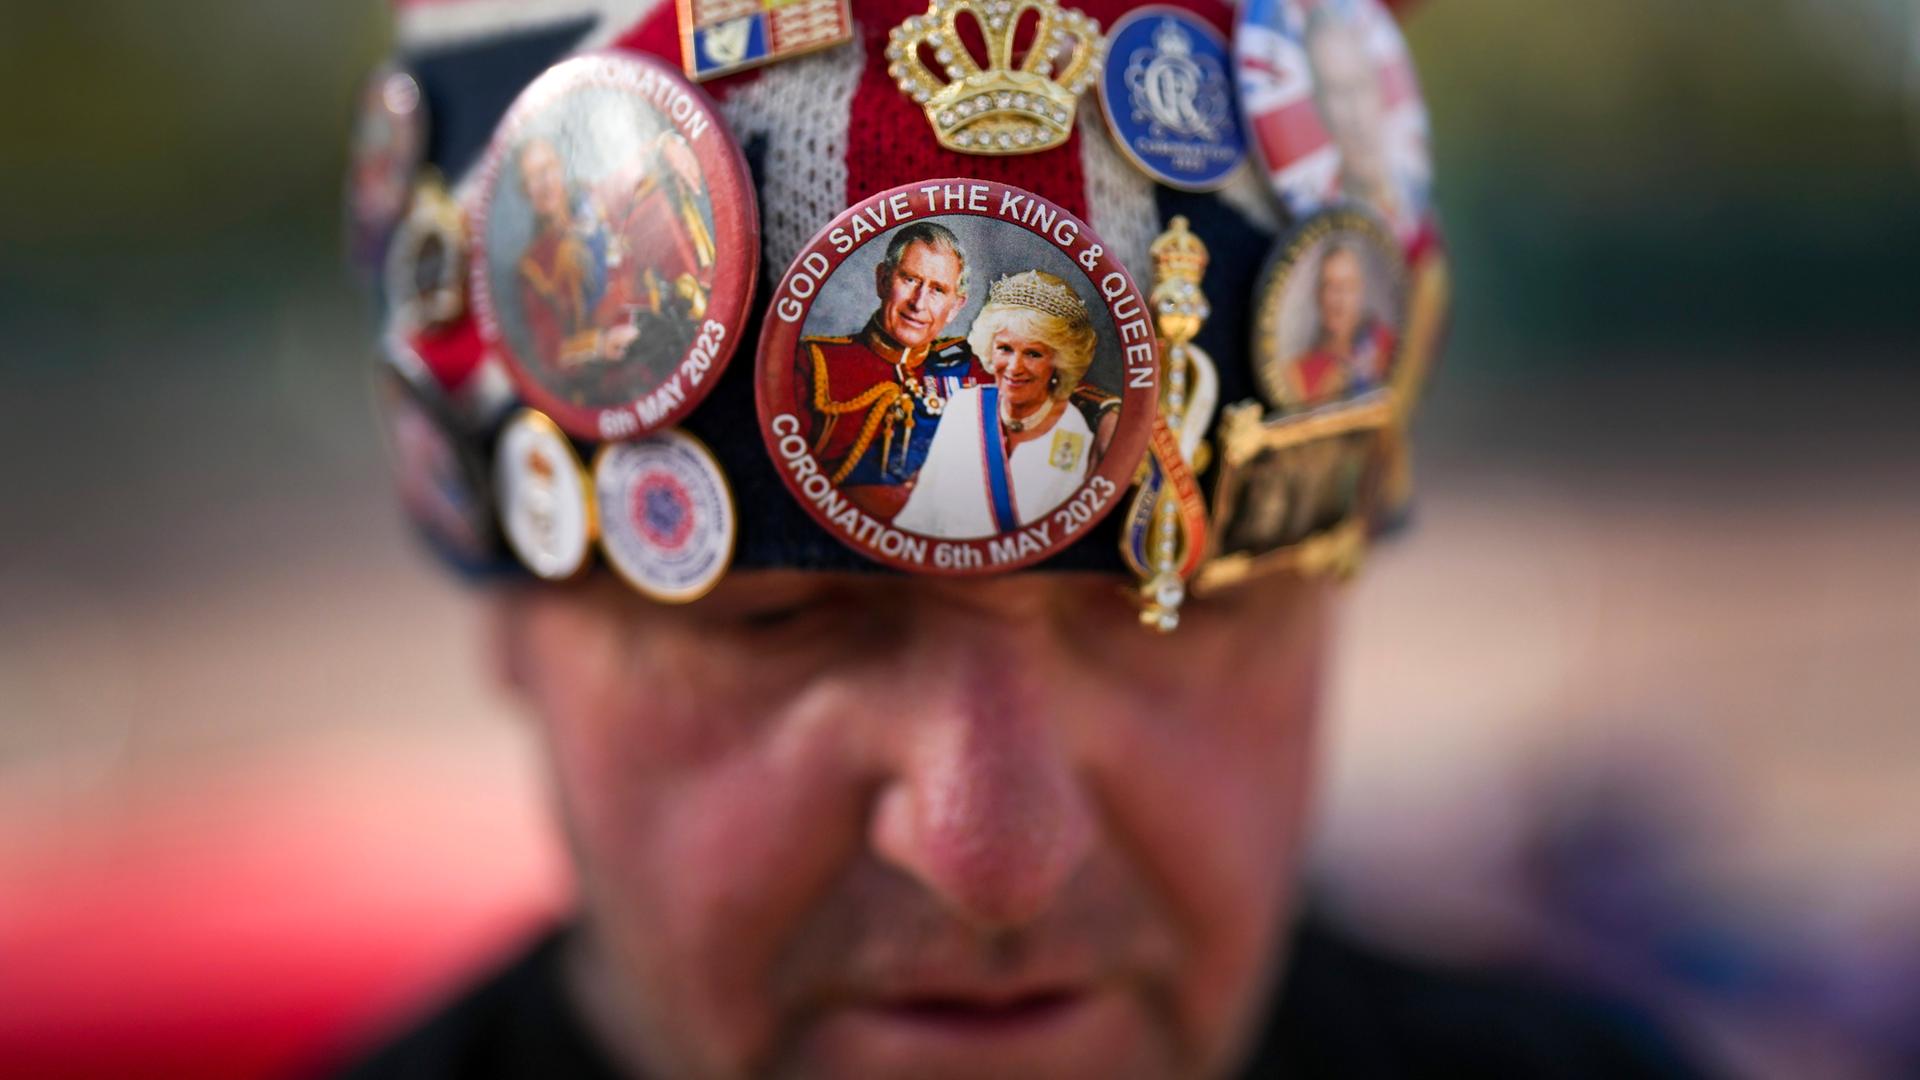 Ein Brite trägt wenige Tage vor der Krönung von King Charles III. eine Mütze, die mit Stickern die britische Monarchie feiert.